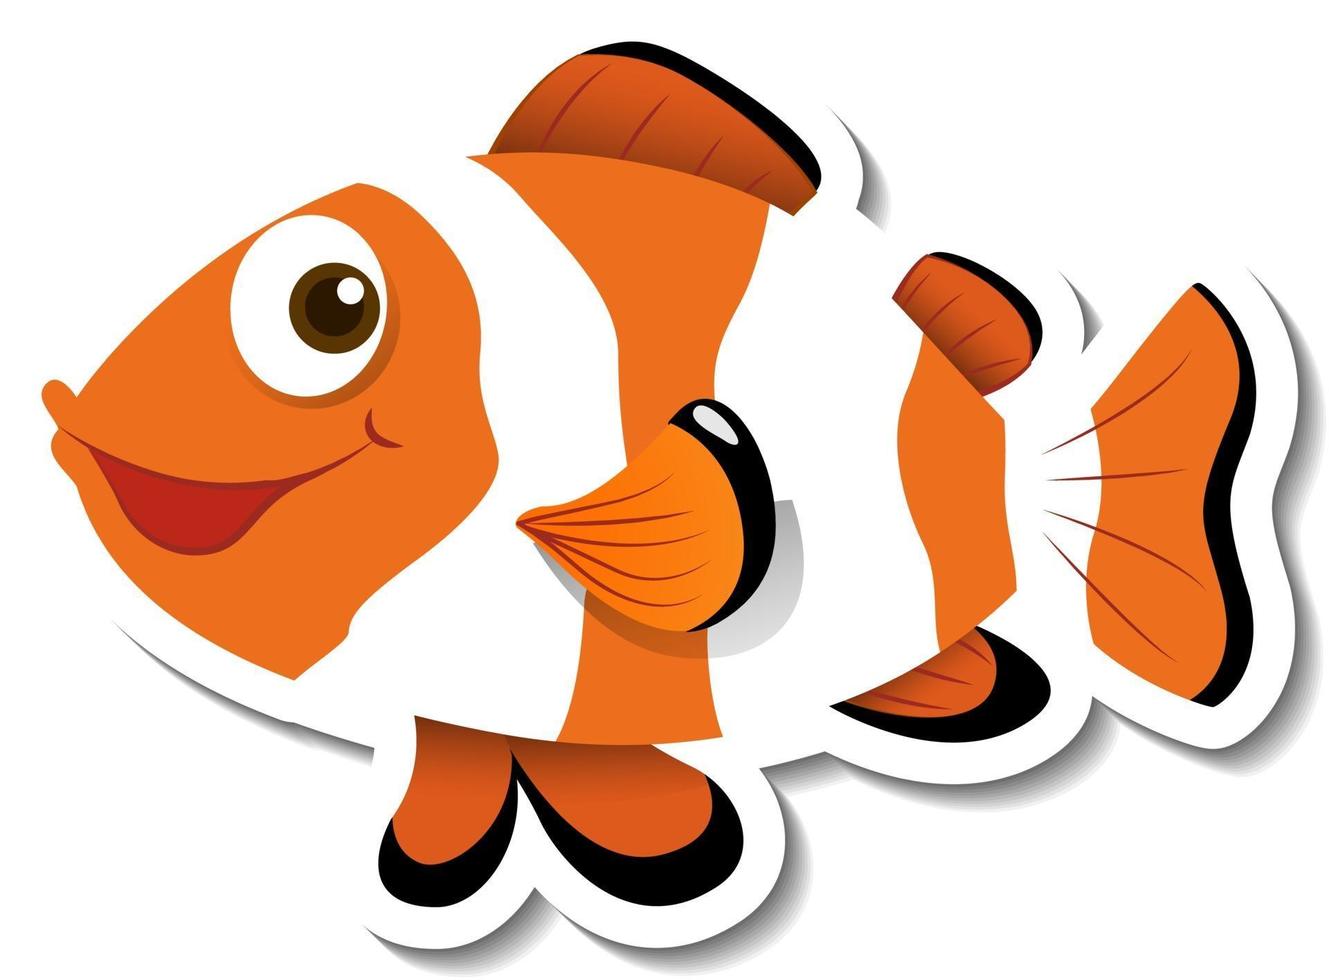 modelo de adesivo com personagem de desenho animado de peixe-palhaço ocellaris isolado vetor